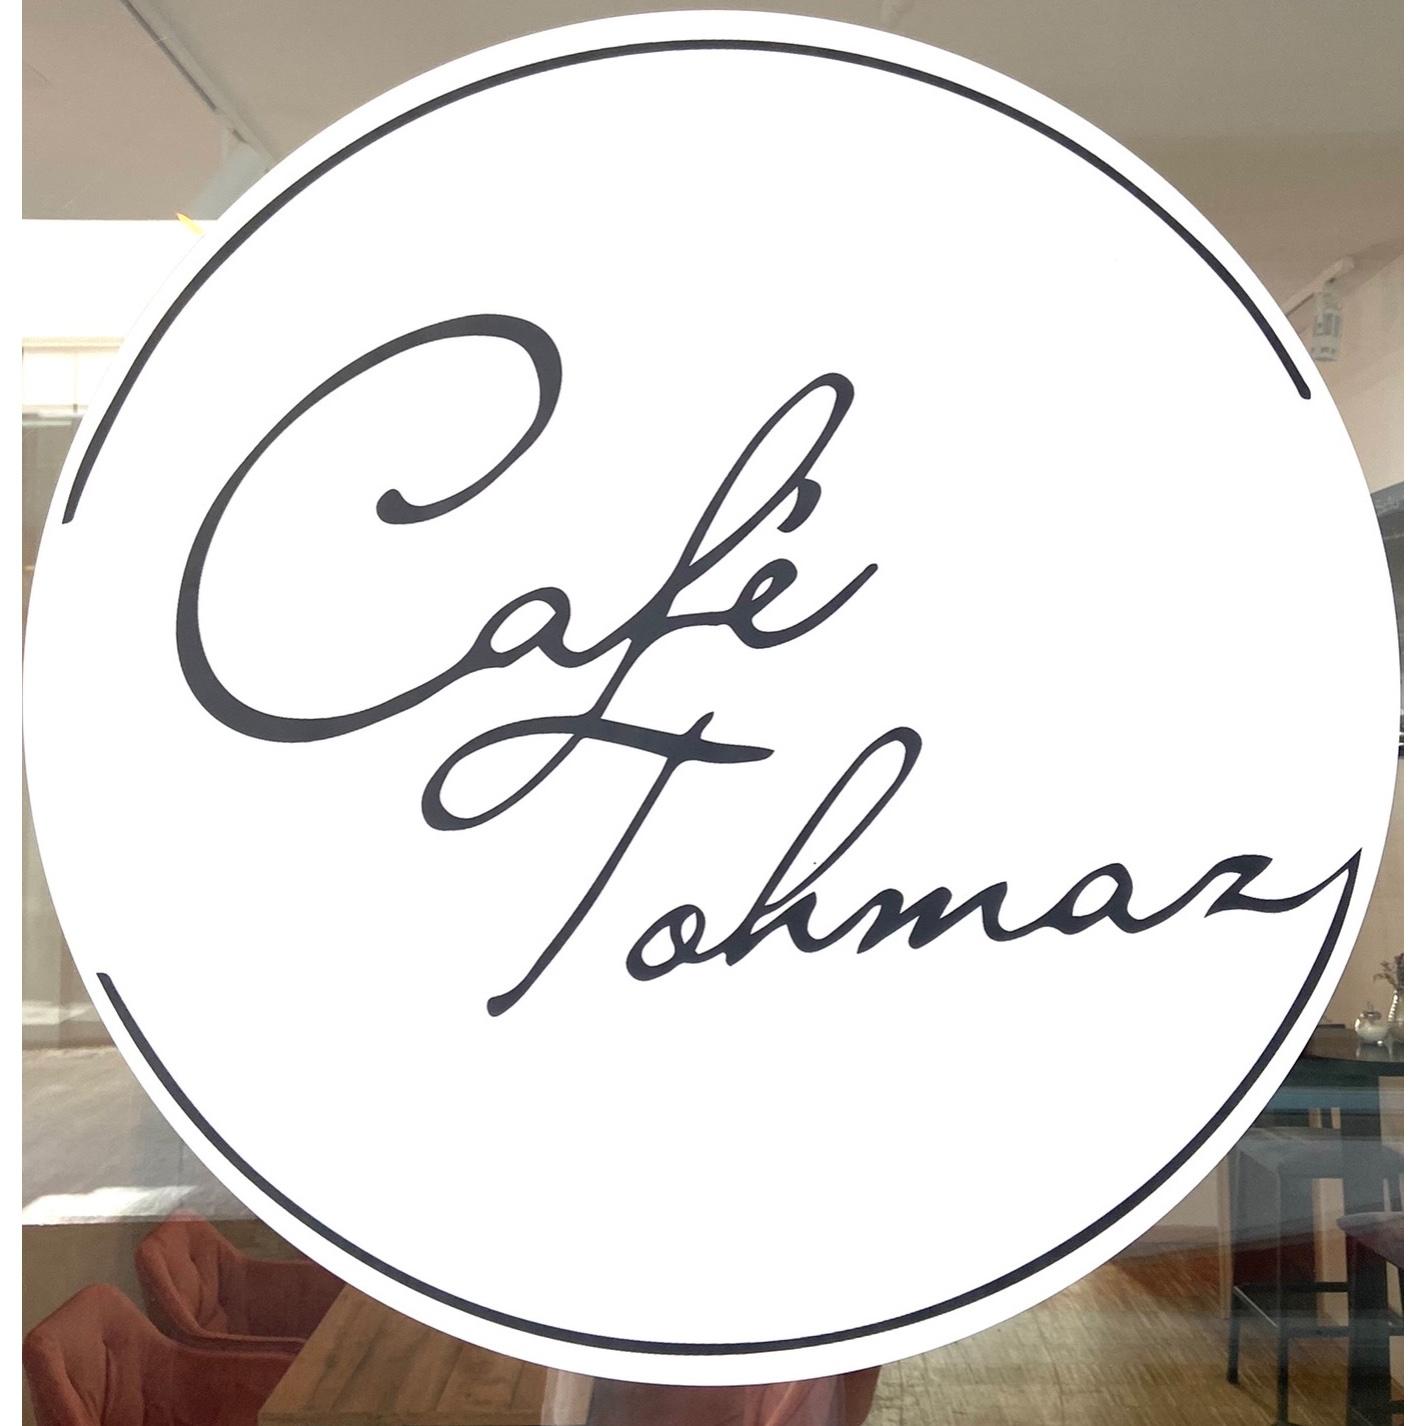 Café Tohmaz  